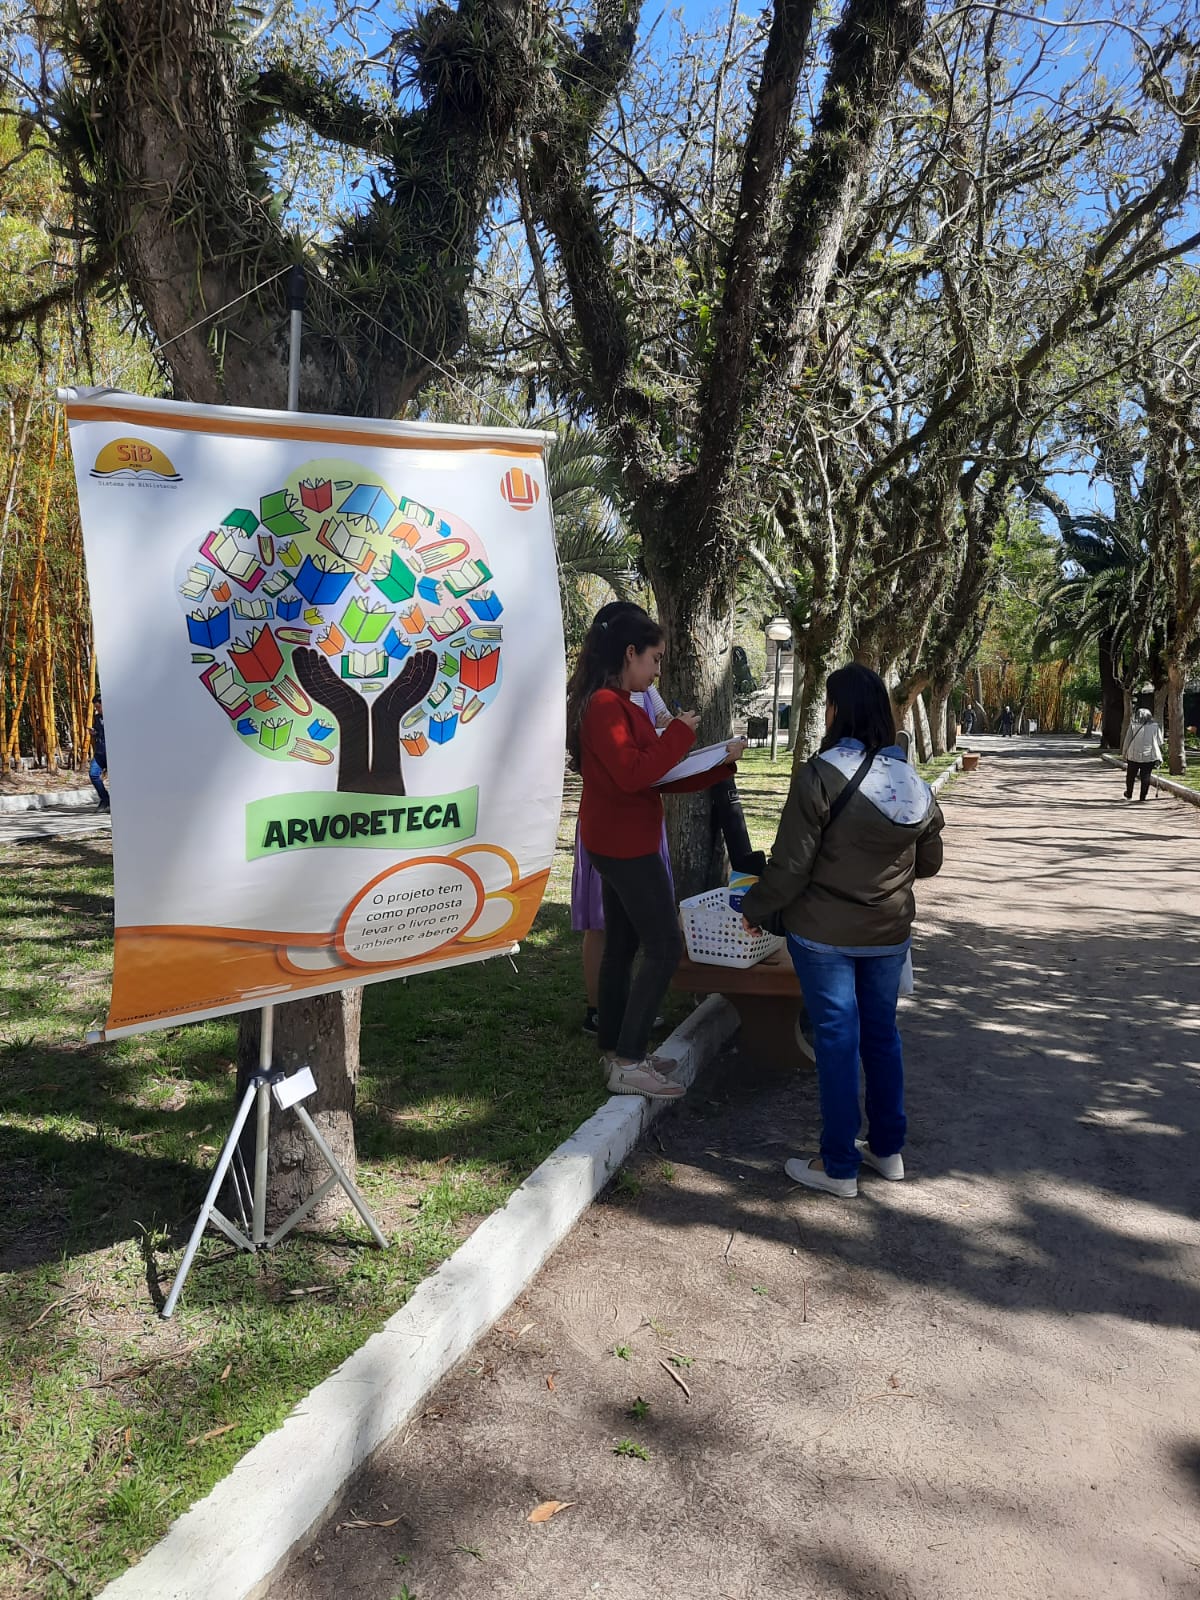 Fundo com árvores da praça Tamandaré, do lado esquerdo o banner do projeto arvoreteca e ao lado pessoas olhando alguns livros.